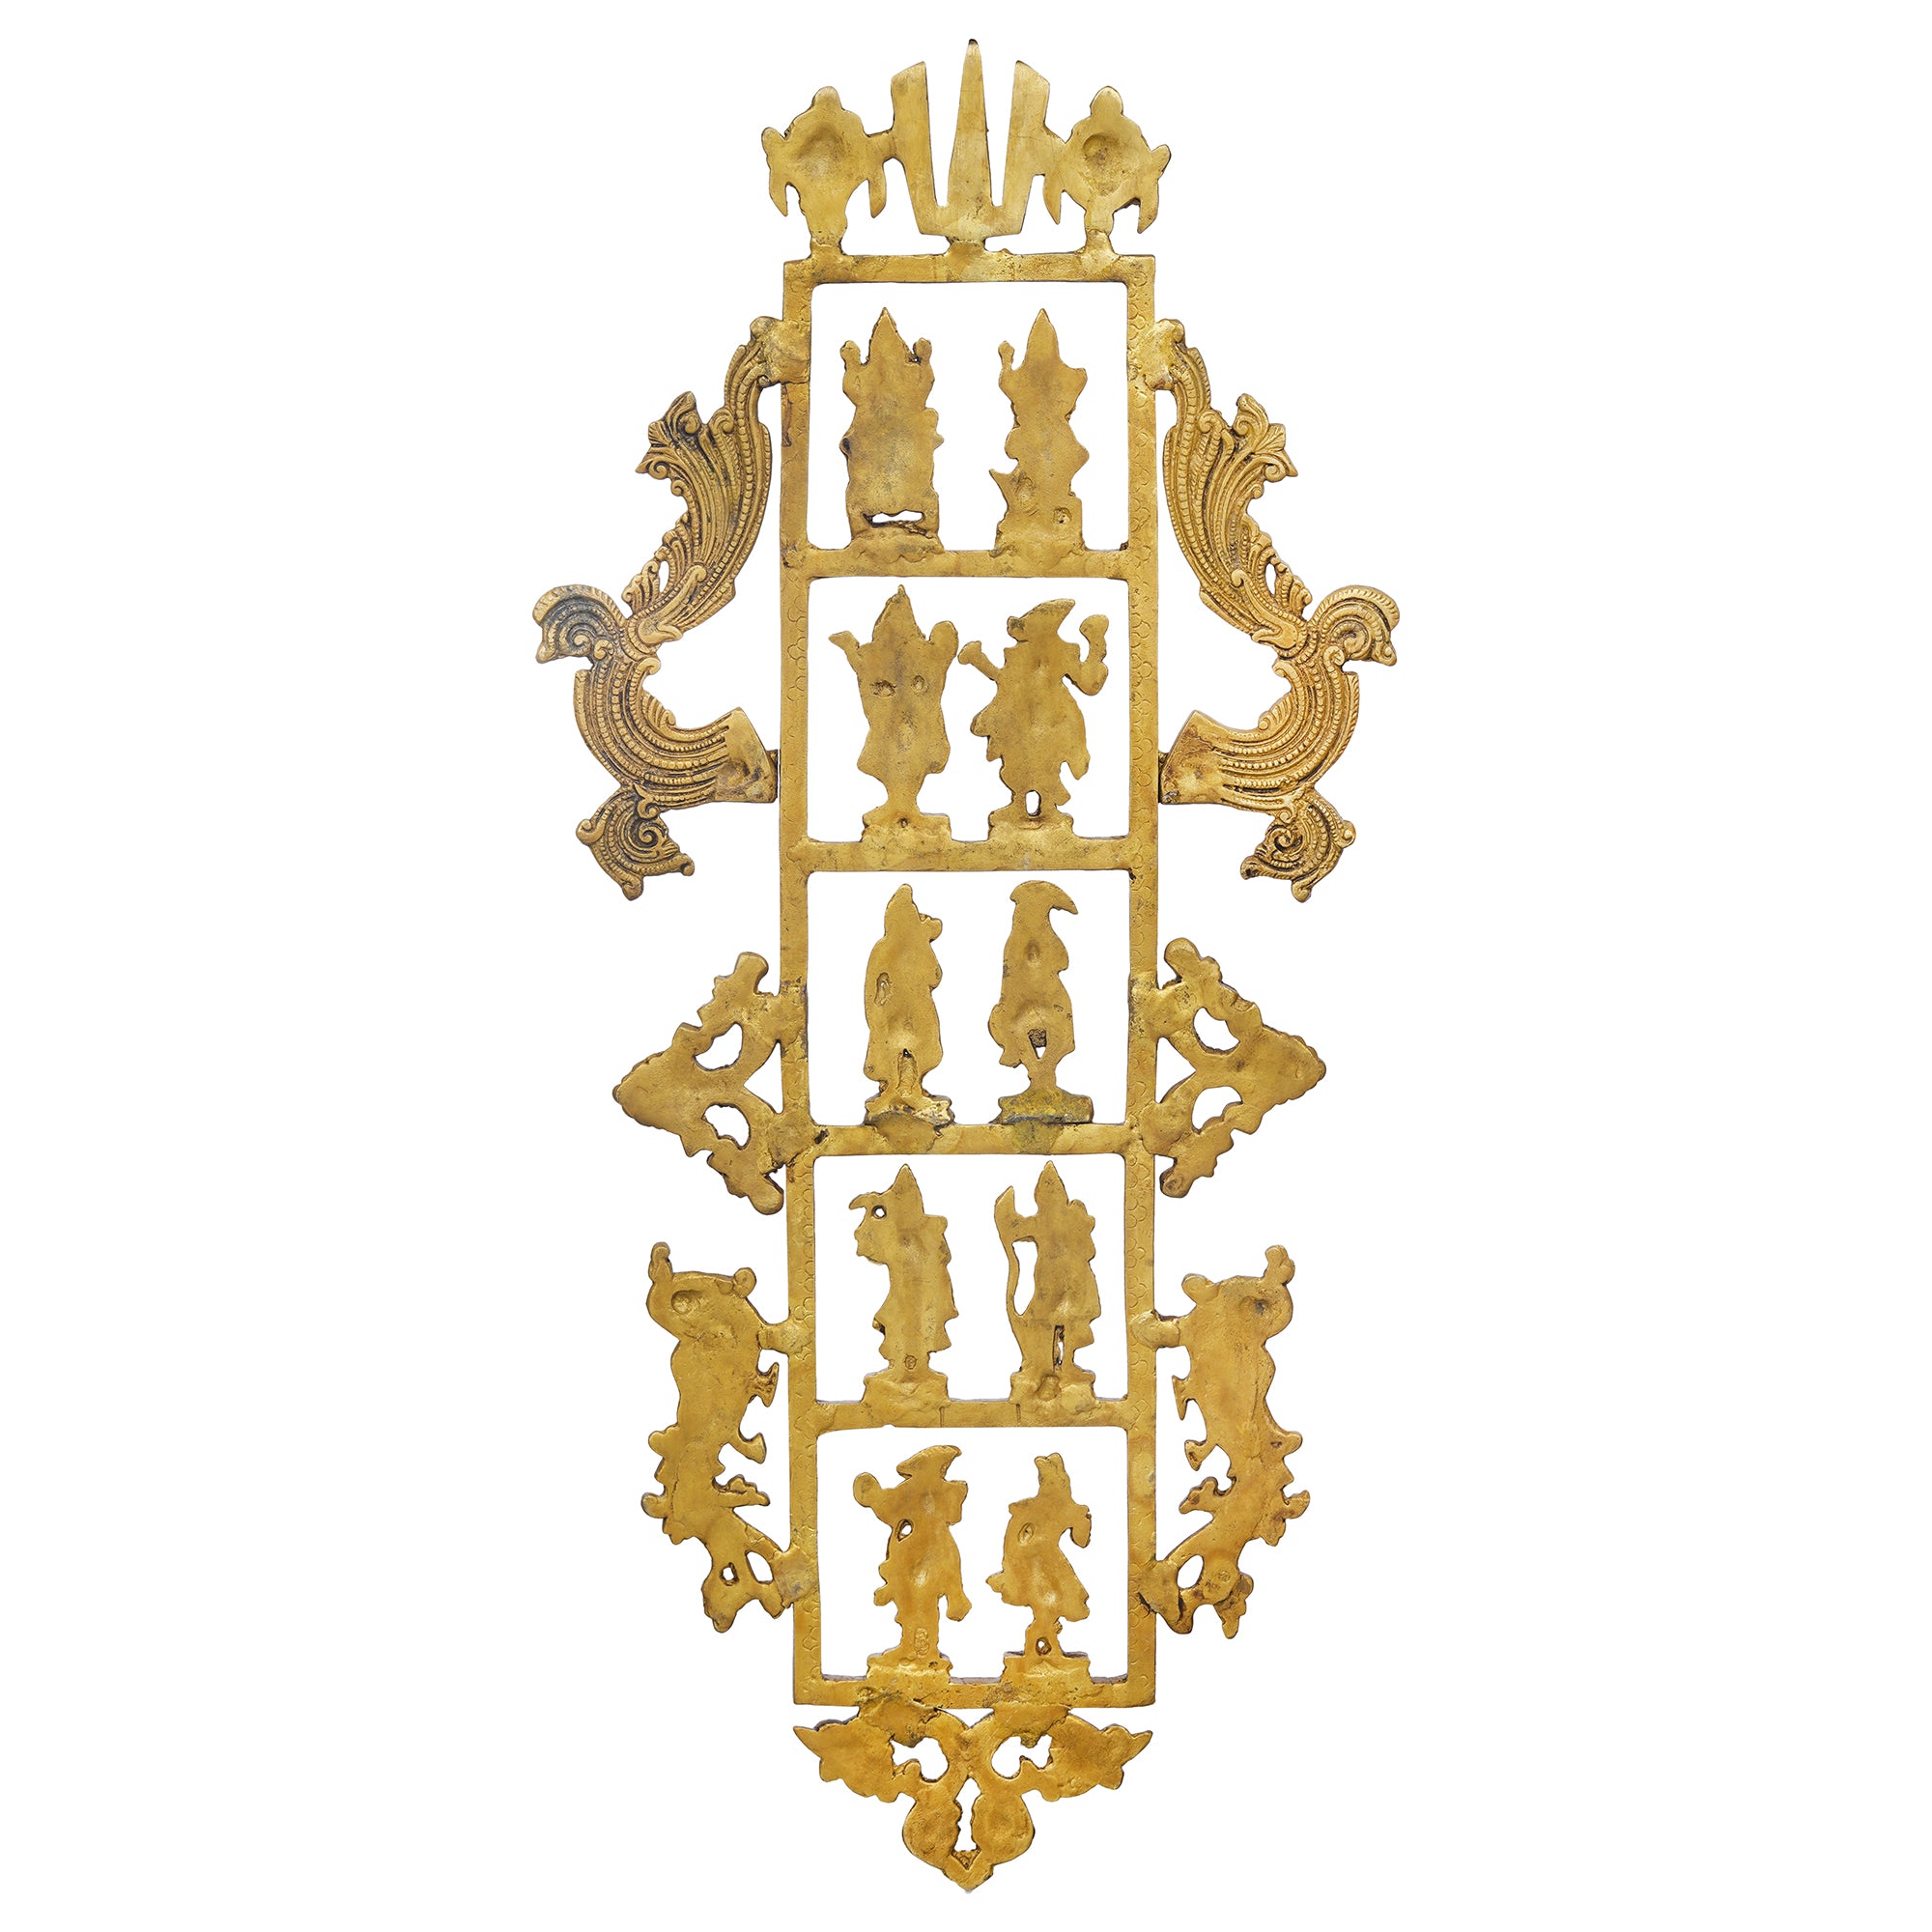 eCraftIndia Golden Brass Lord Vishnu Dashavatara - Ten Incarnations of Vishnu Religious Wall Hanging 8